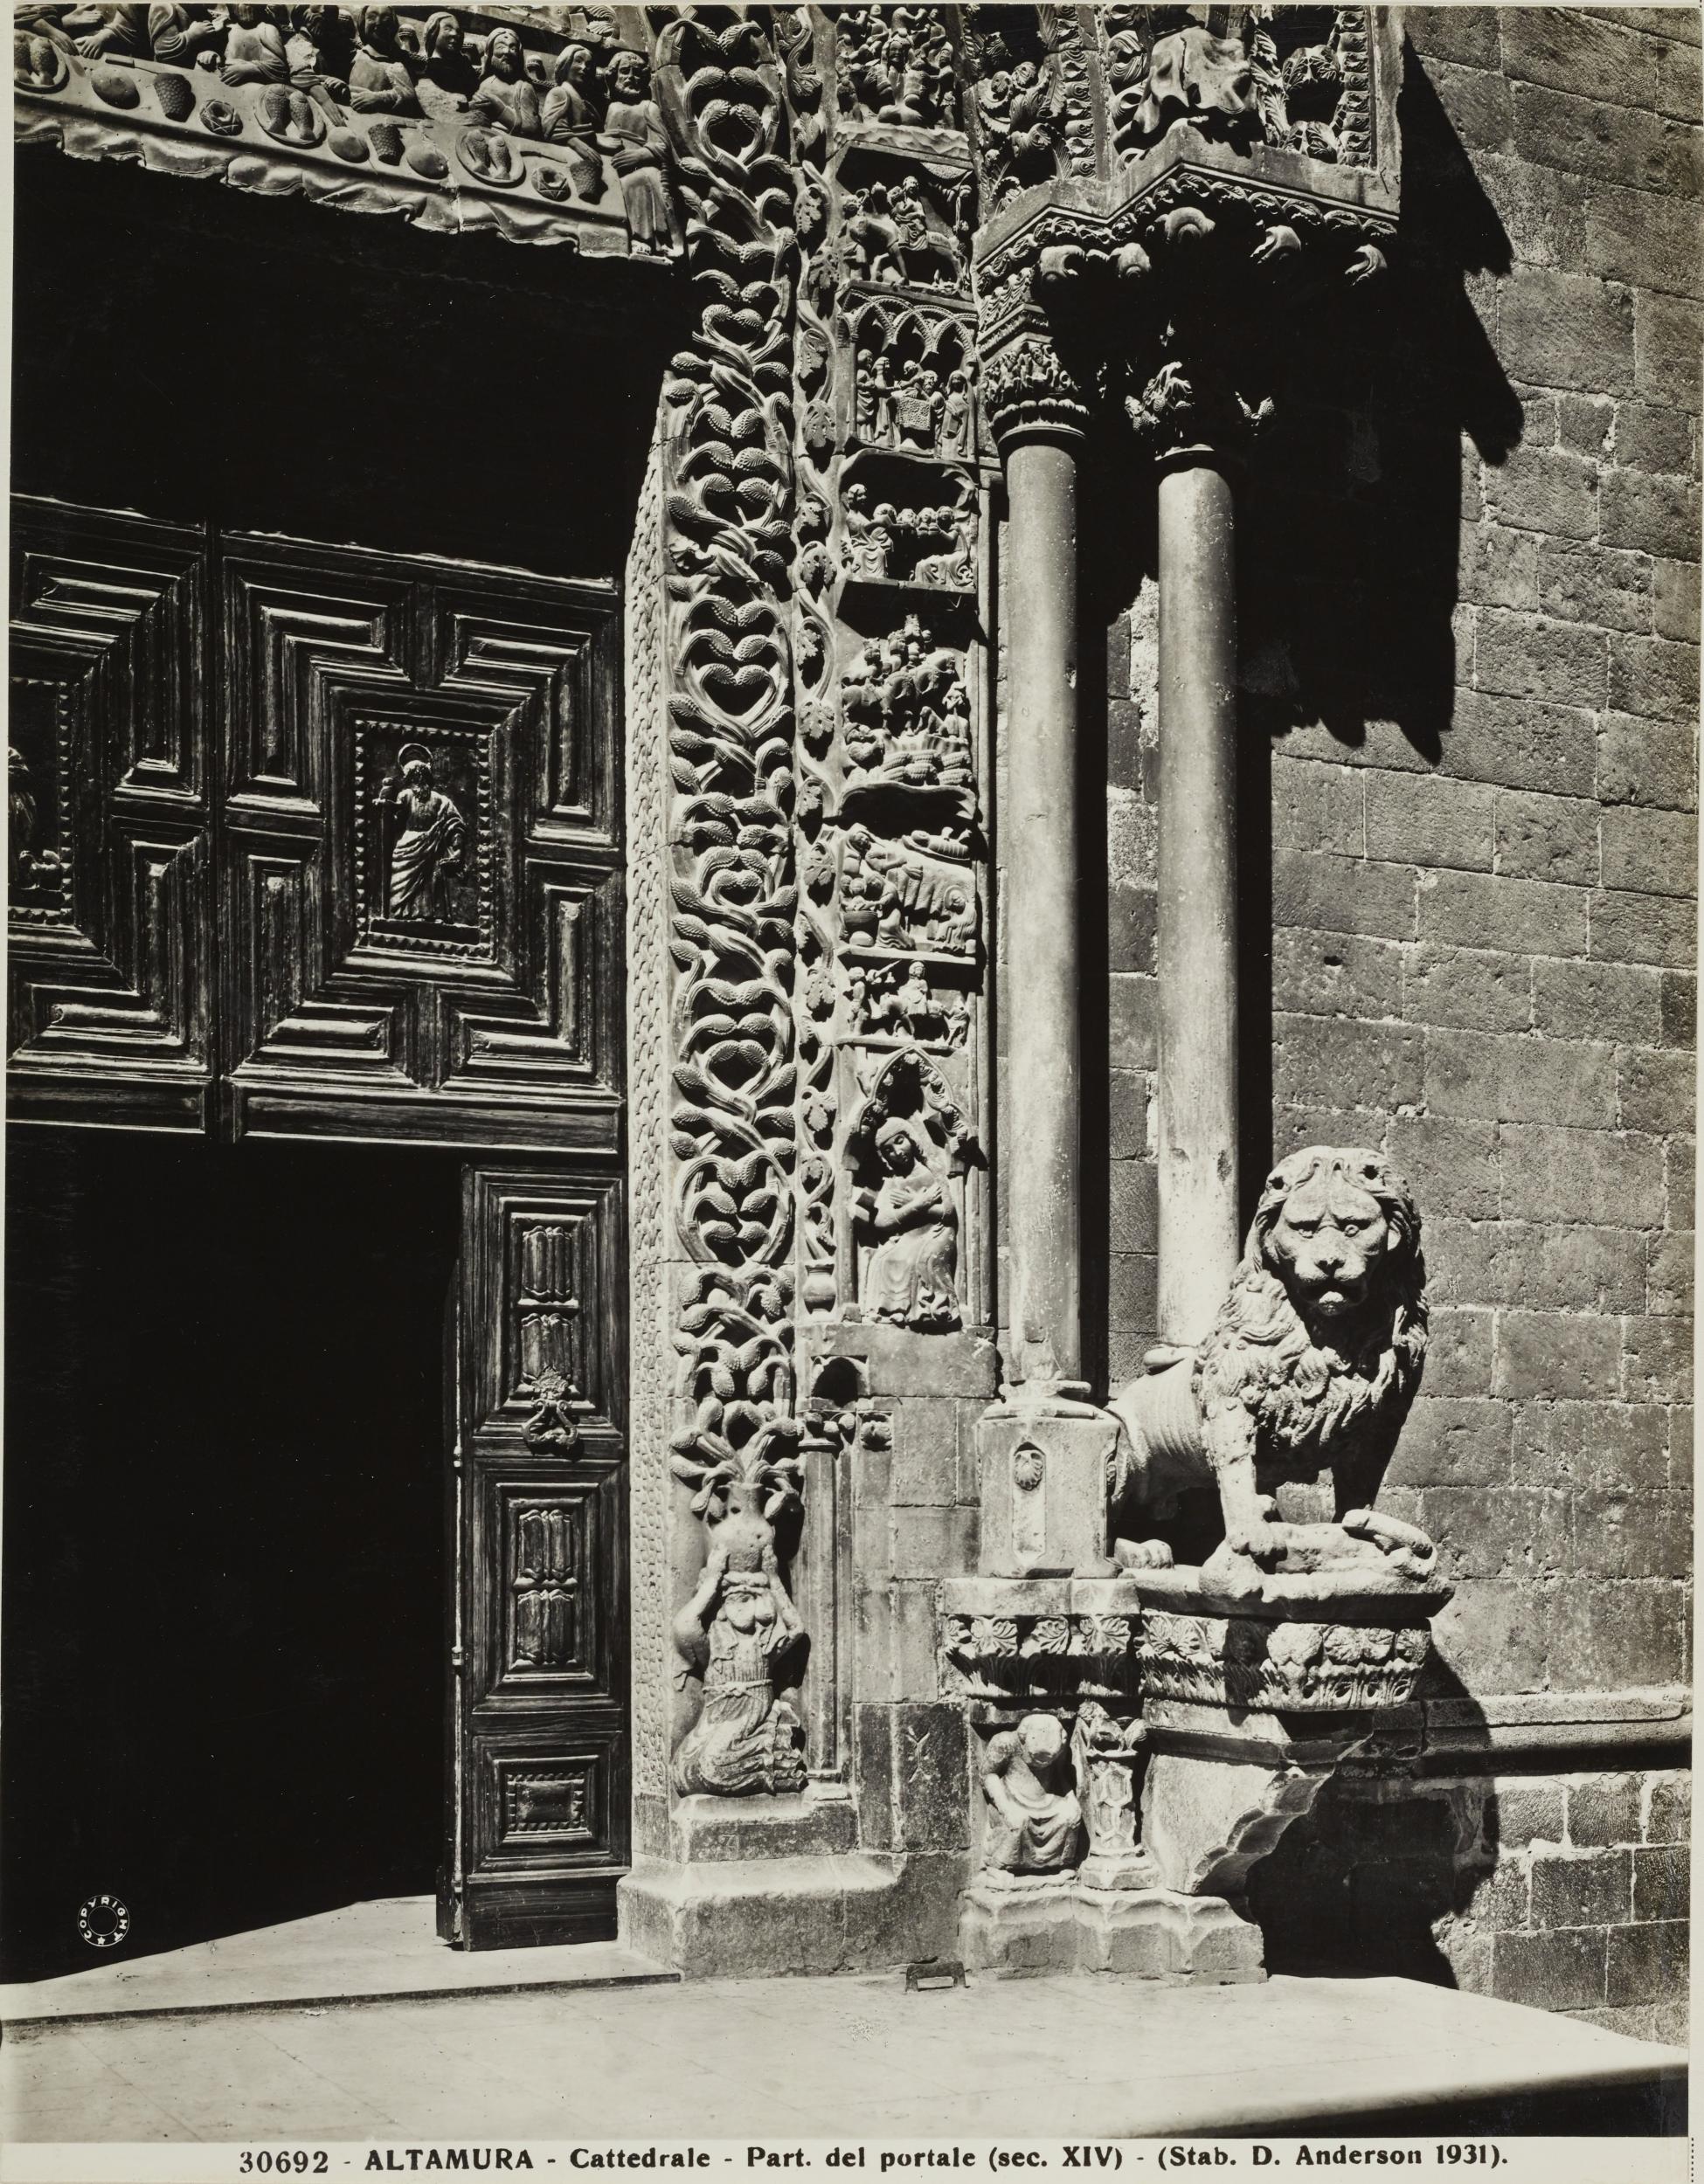 Domenico Anderson, Altamura - Cattedrale di S. Maria Assunta, portale,particolare, 1951-2000, gelatina ai sali d'argento/carta, MPI130829